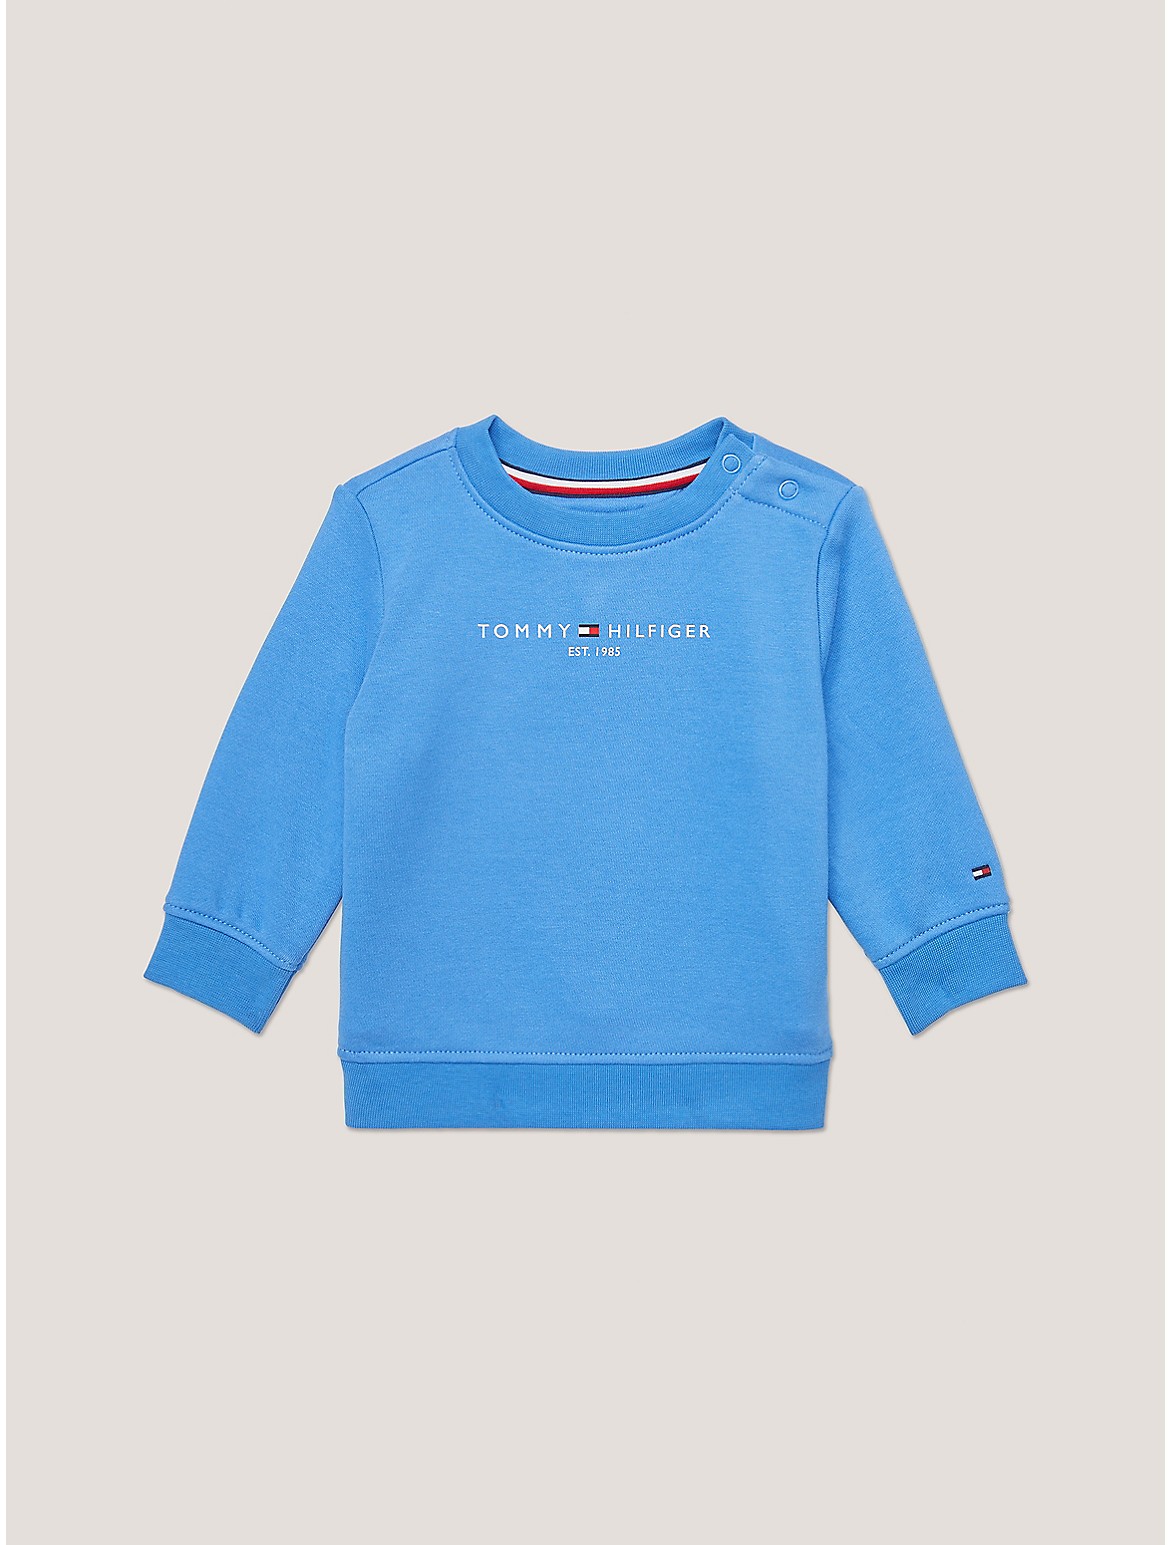 Tommy Hilfiger Boys' Babies' Tommy Logo Sweatshirt - Blue - 18M